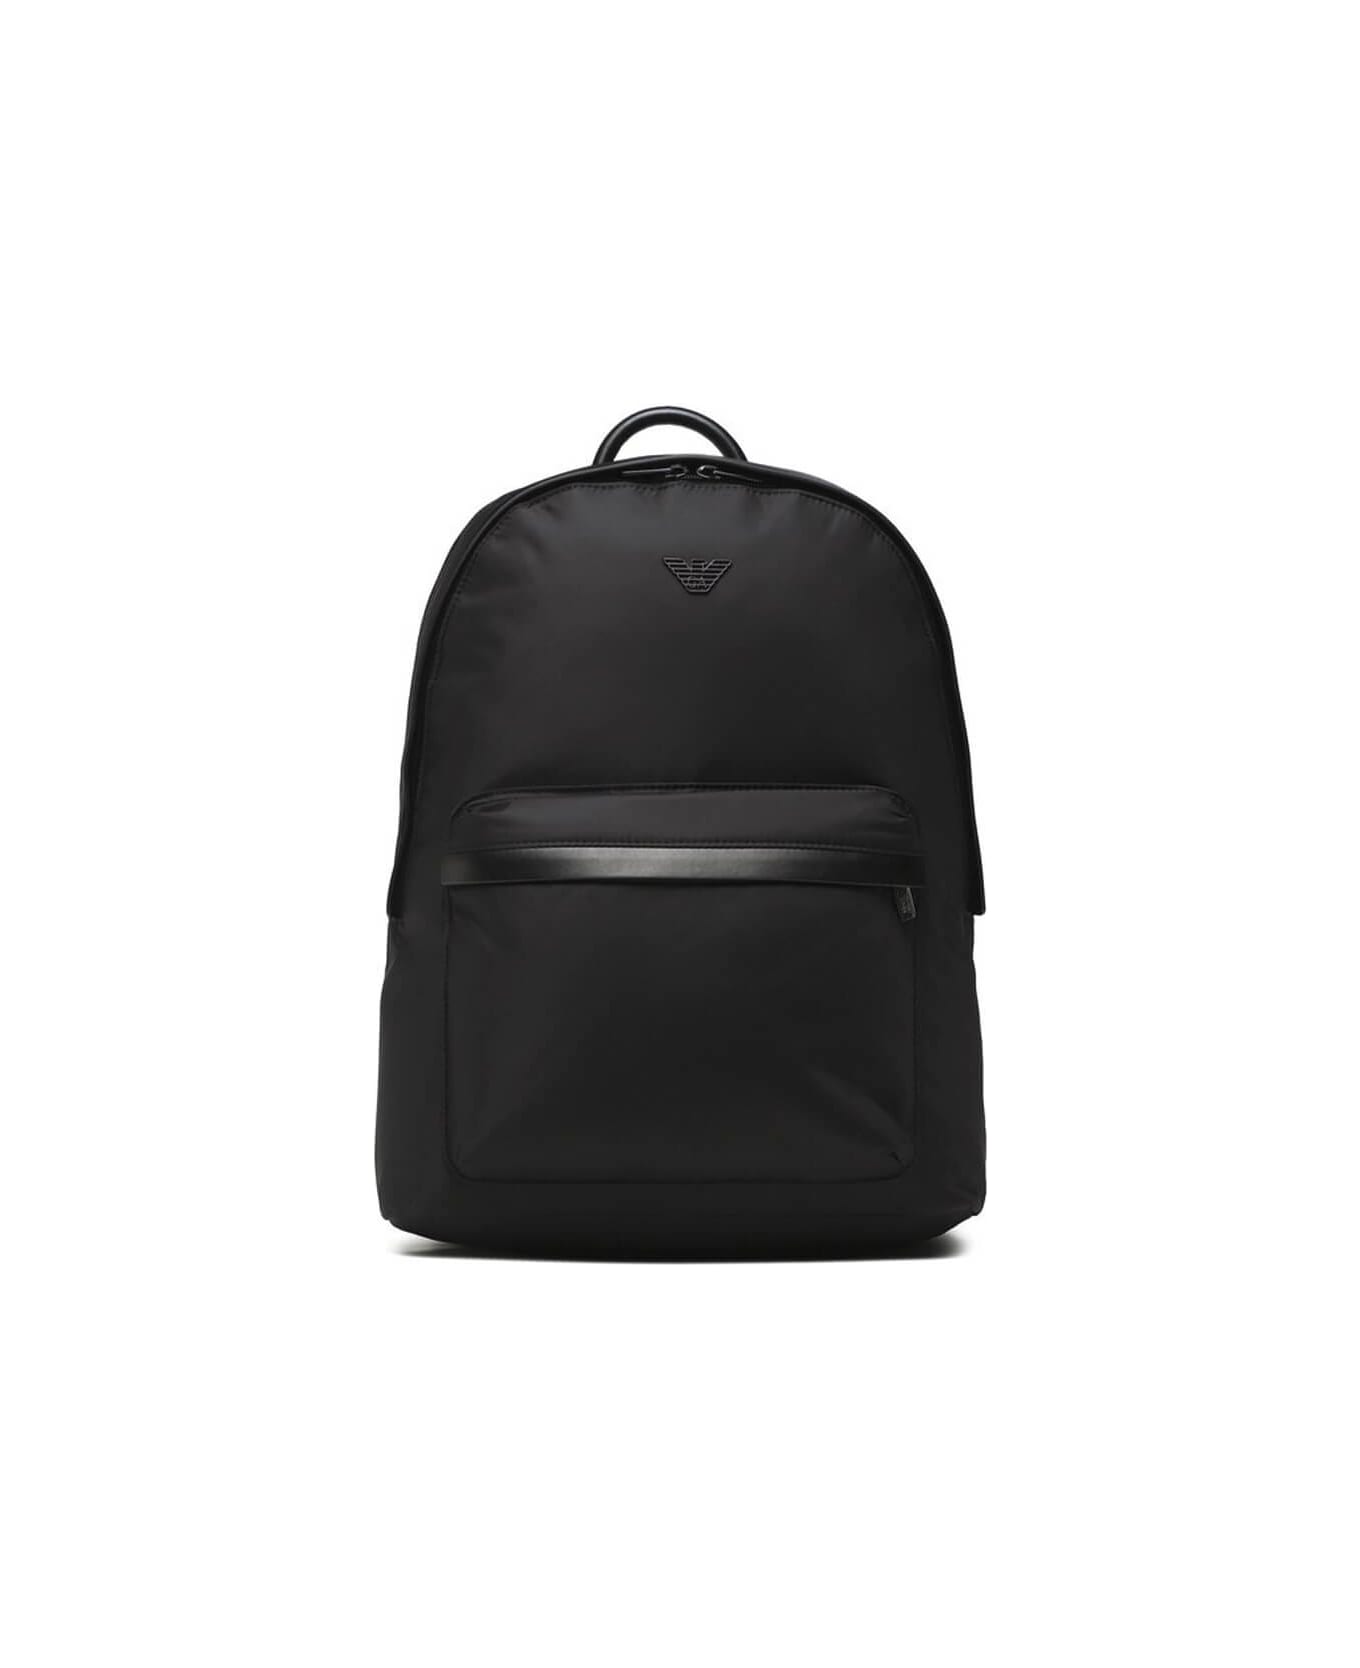 Emporio Armani Black Nylon Backpack - Nero